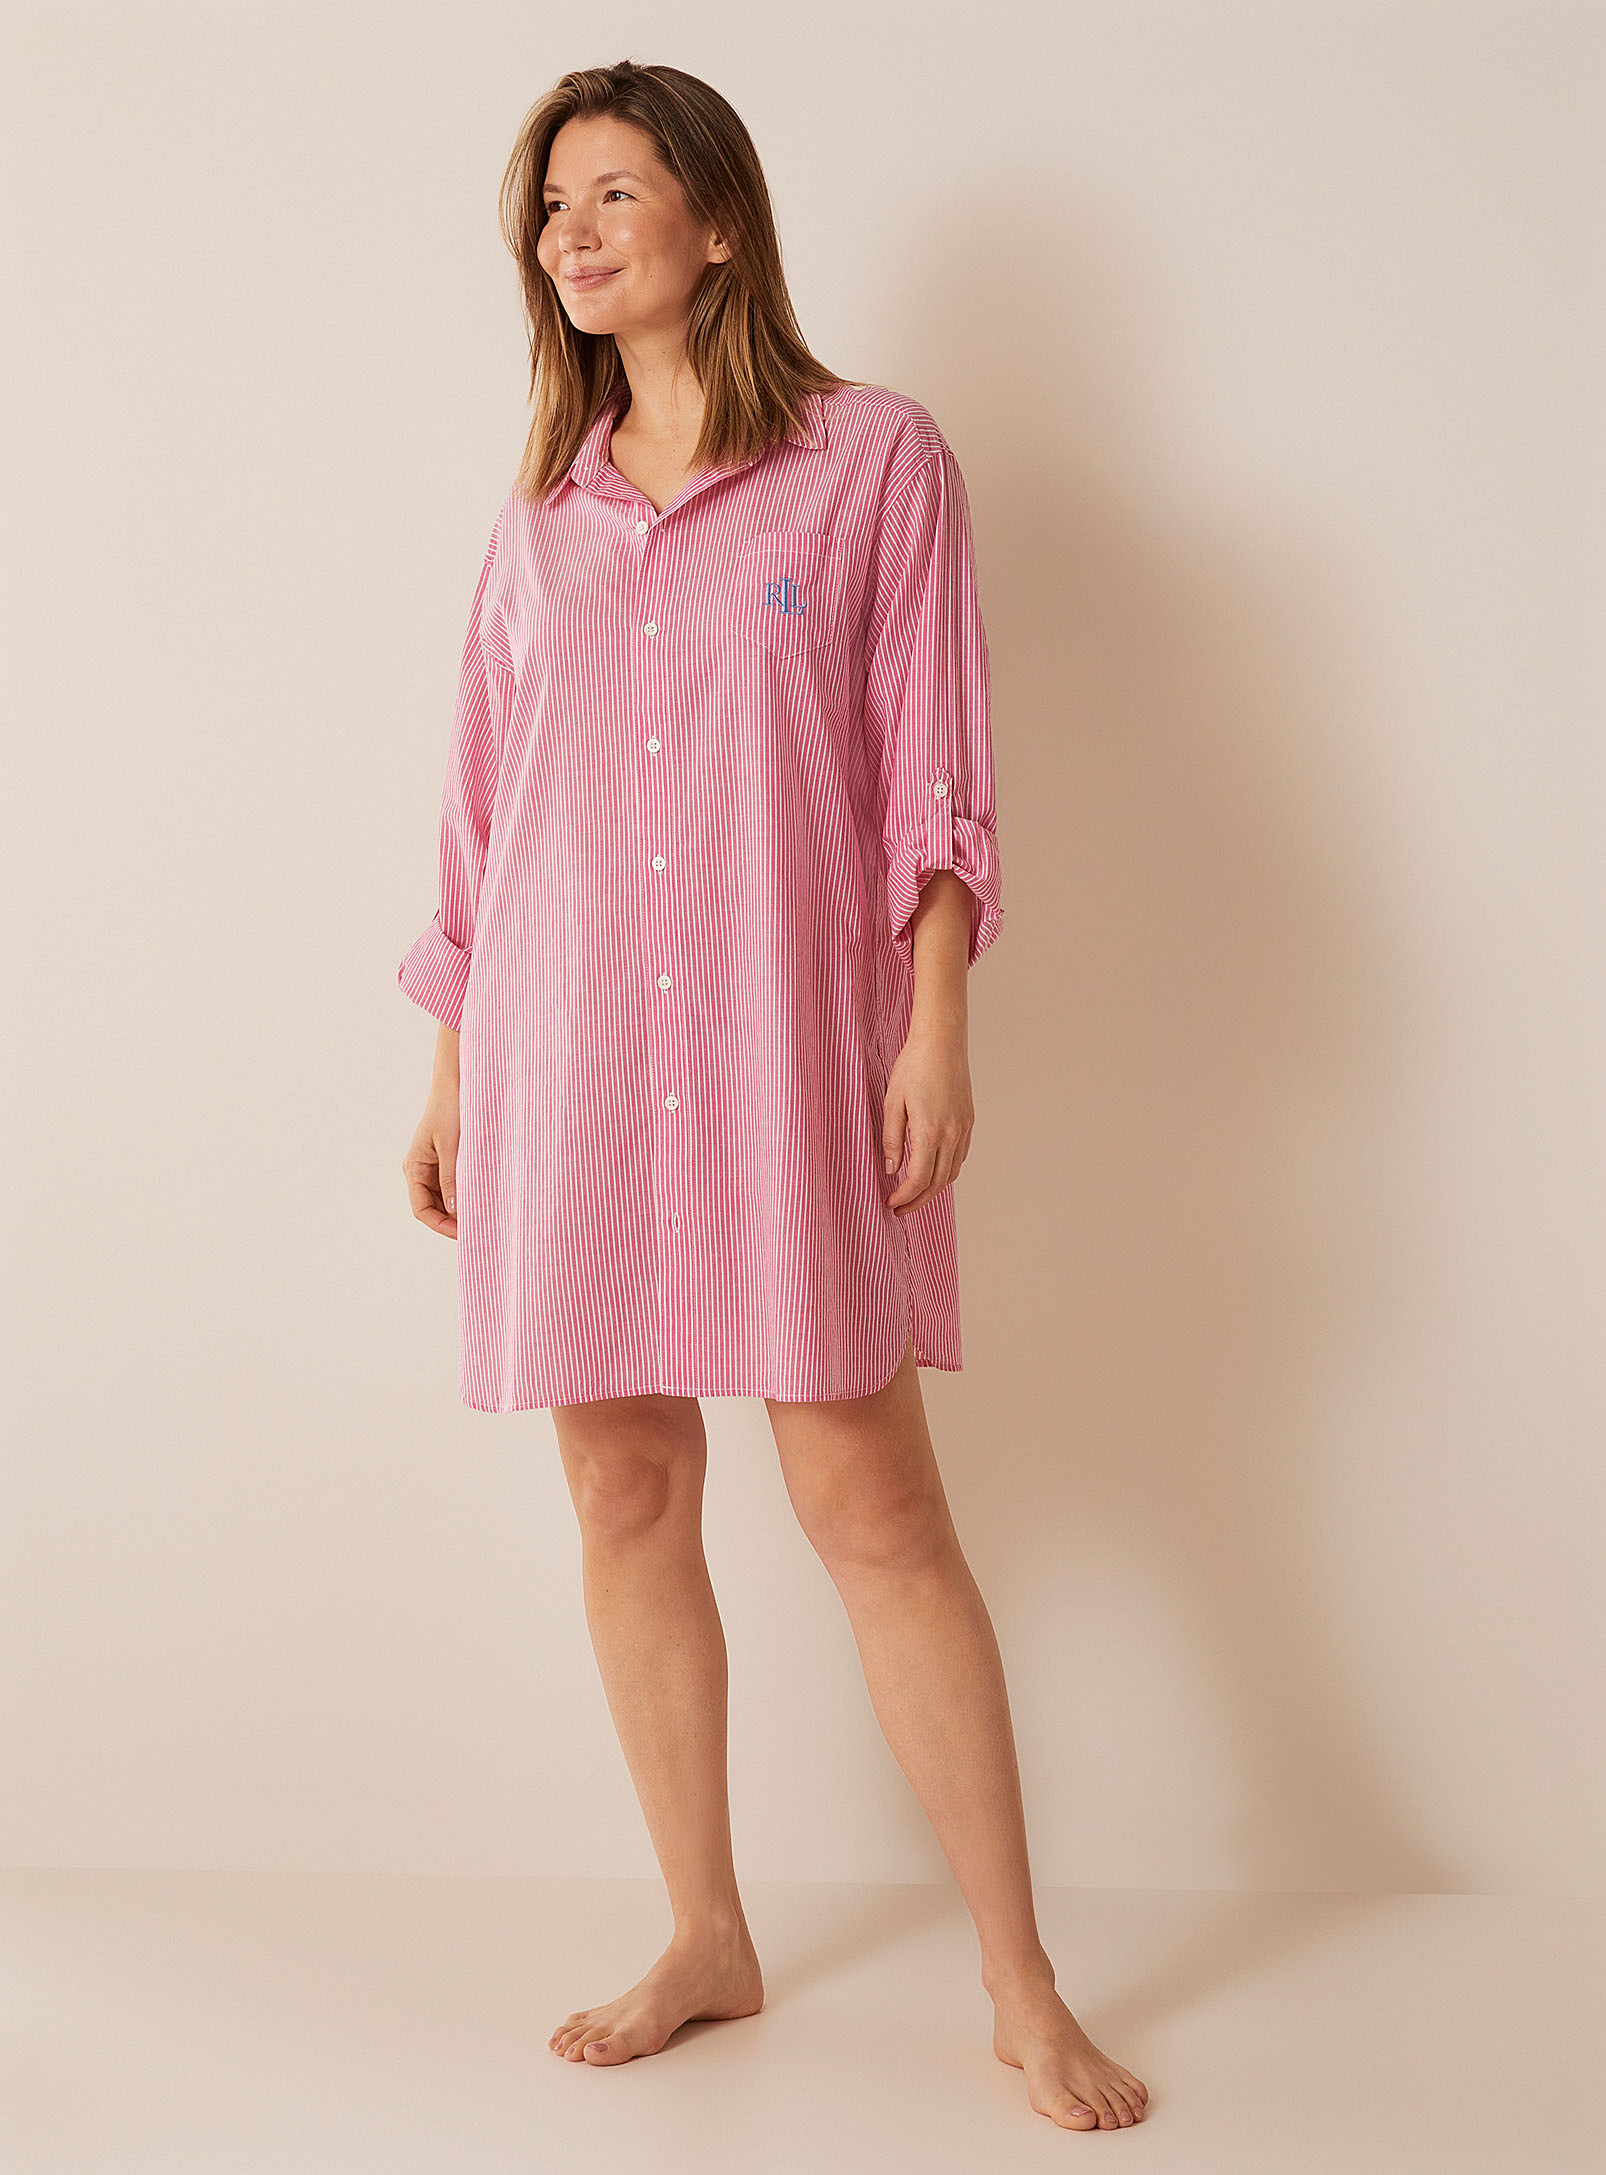 Lauren par Ralph - La chemise de nuit rose fines rayures